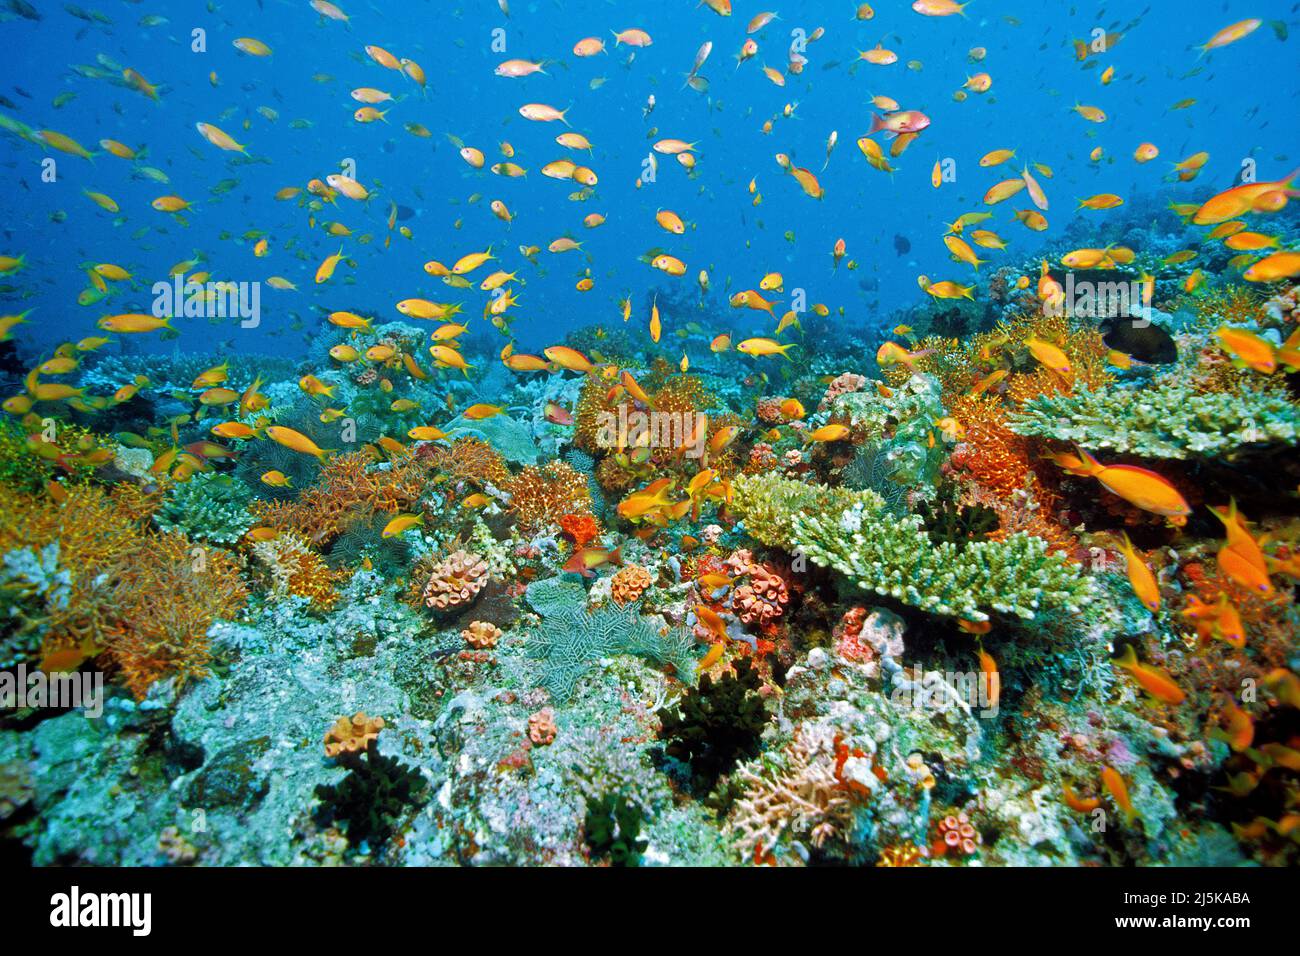 Bijou fée basset ou litRetail anthias (Pseudanthias squamipinnis) croisière sur un récif tropical de corail, Maldives, océan Indien, Asie Banque D'Images